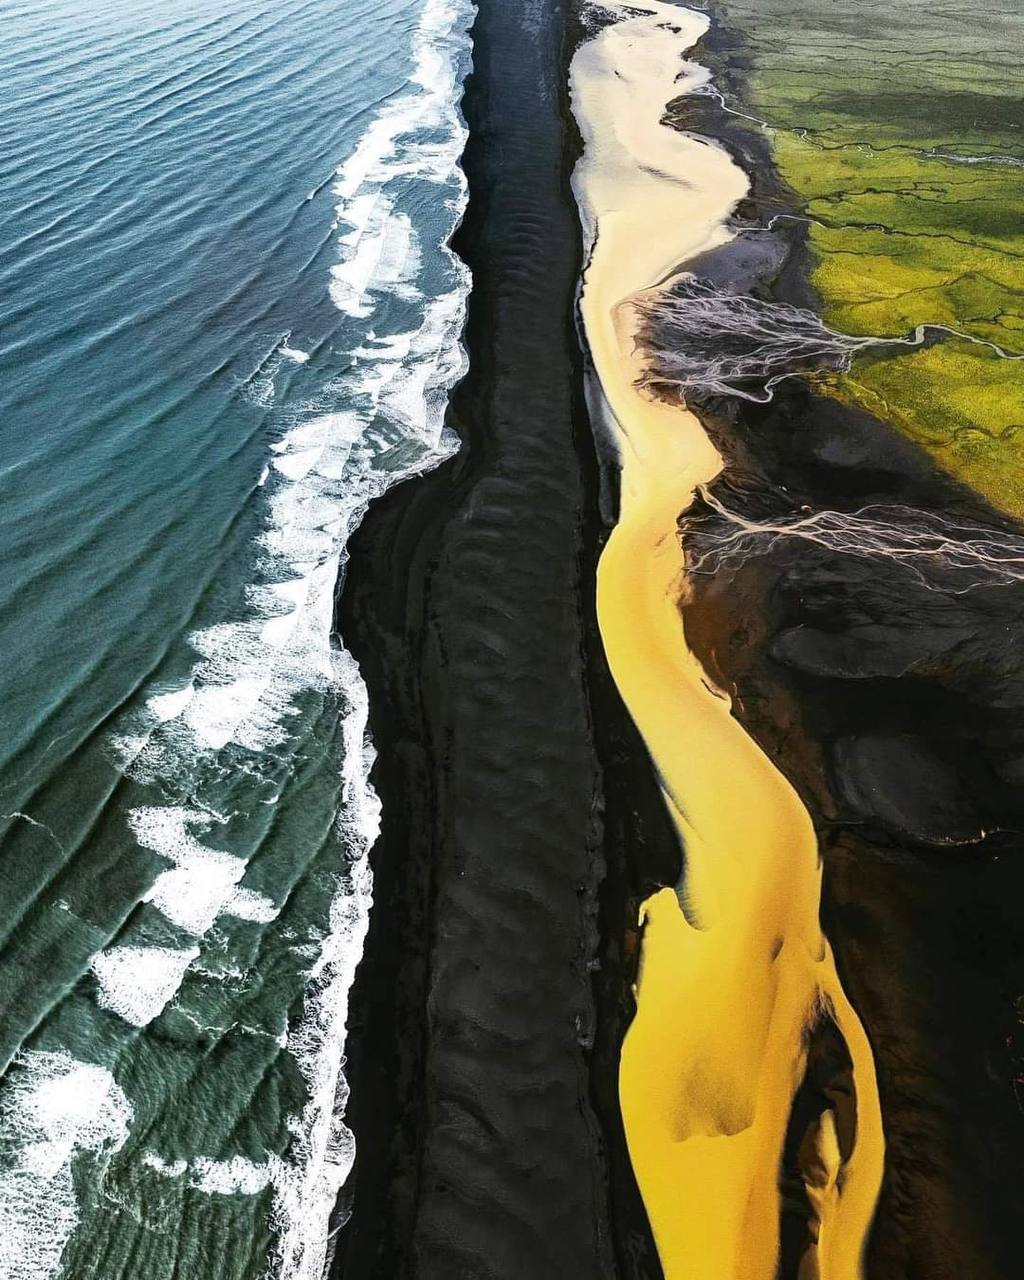 تصویر دیدنی از رودخانه زرد ایسلند+عکس